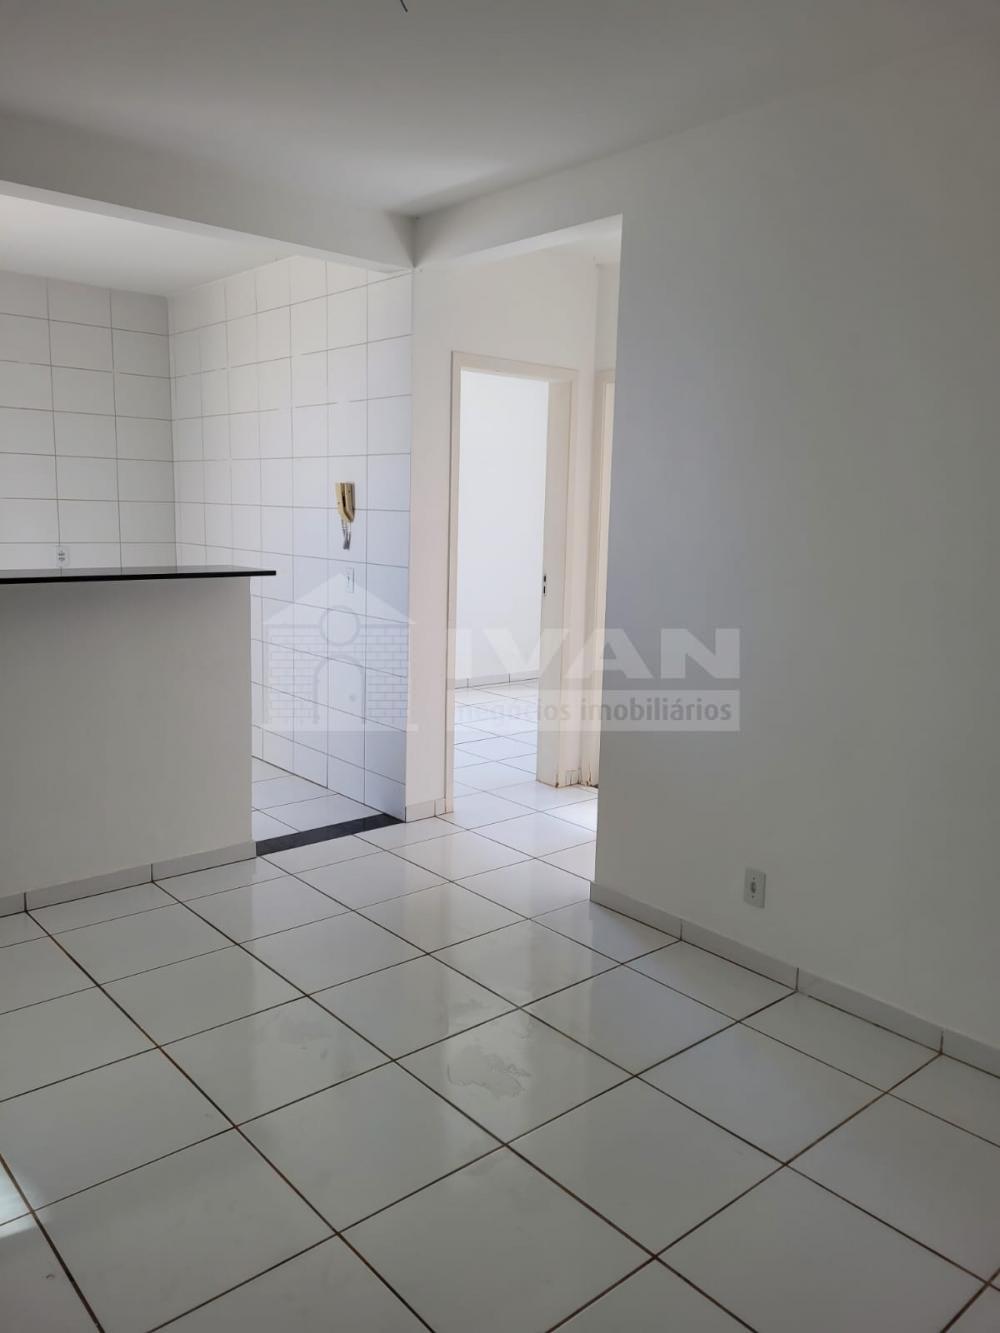 Comprar Apartamento / Padrão em Uberlândia R$ 115.000,00 - Foto 1